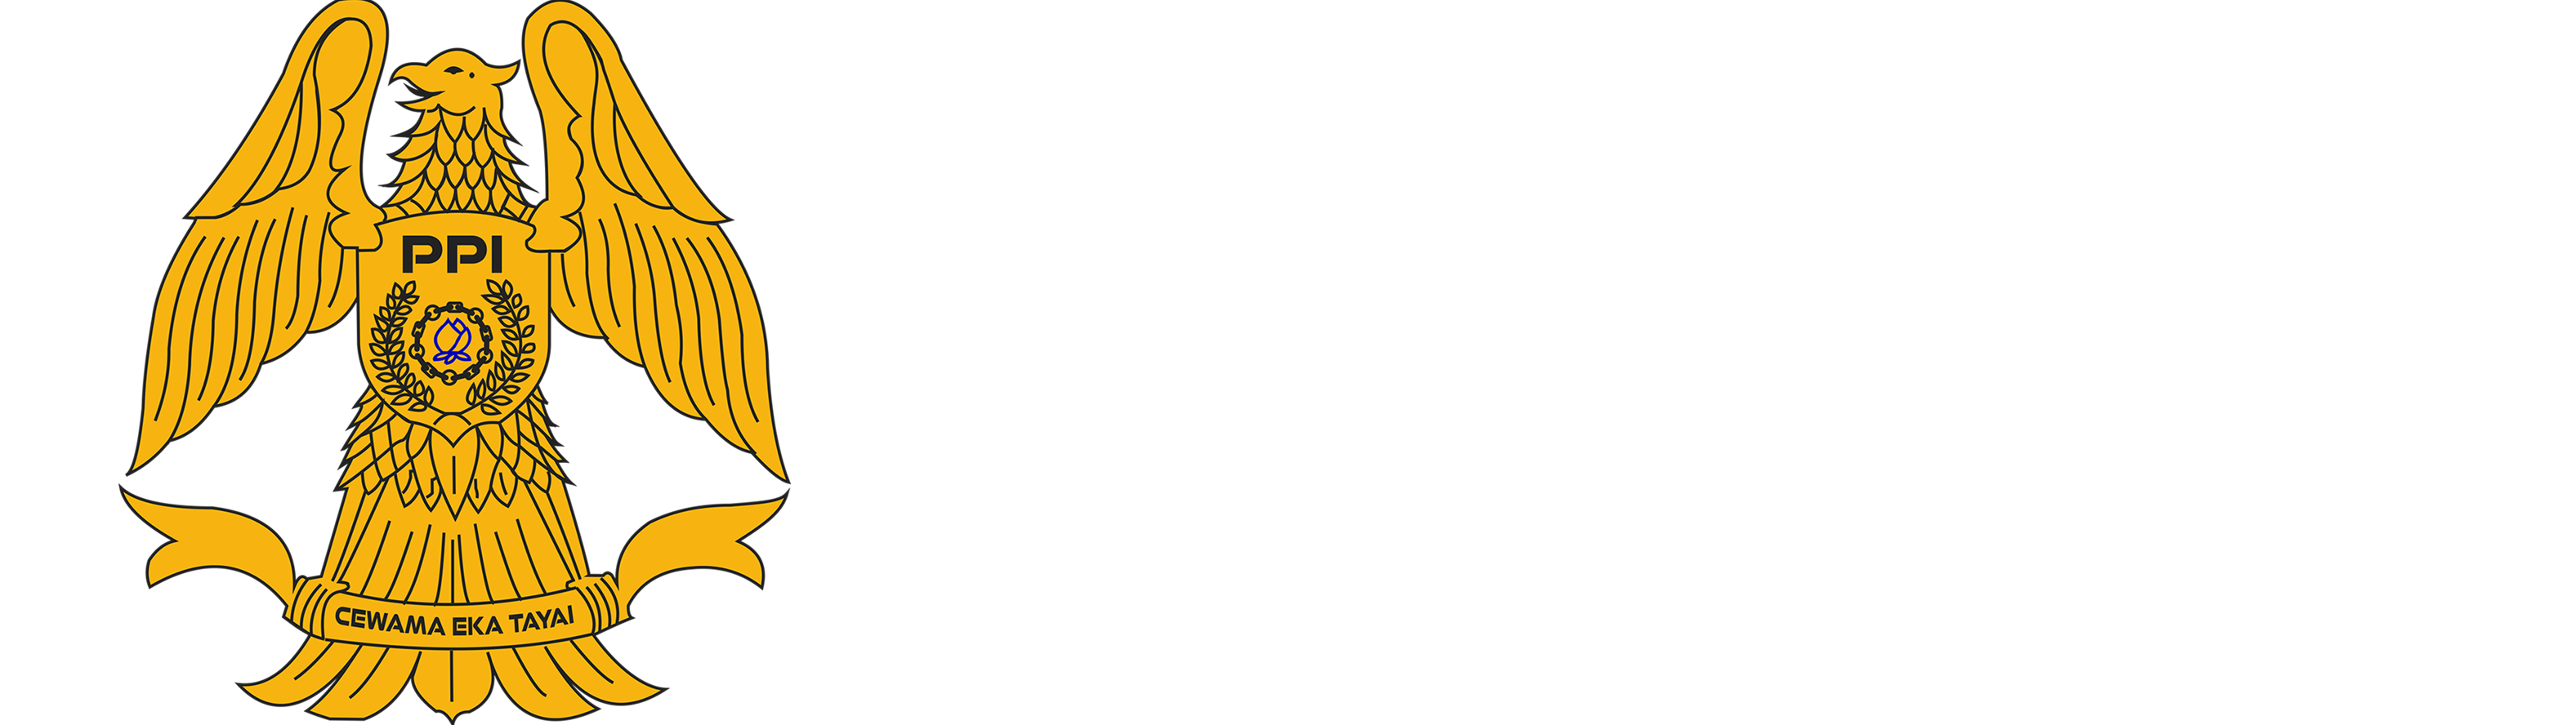 PPIC (Politeknik Penerbangan Indonesia Curug)